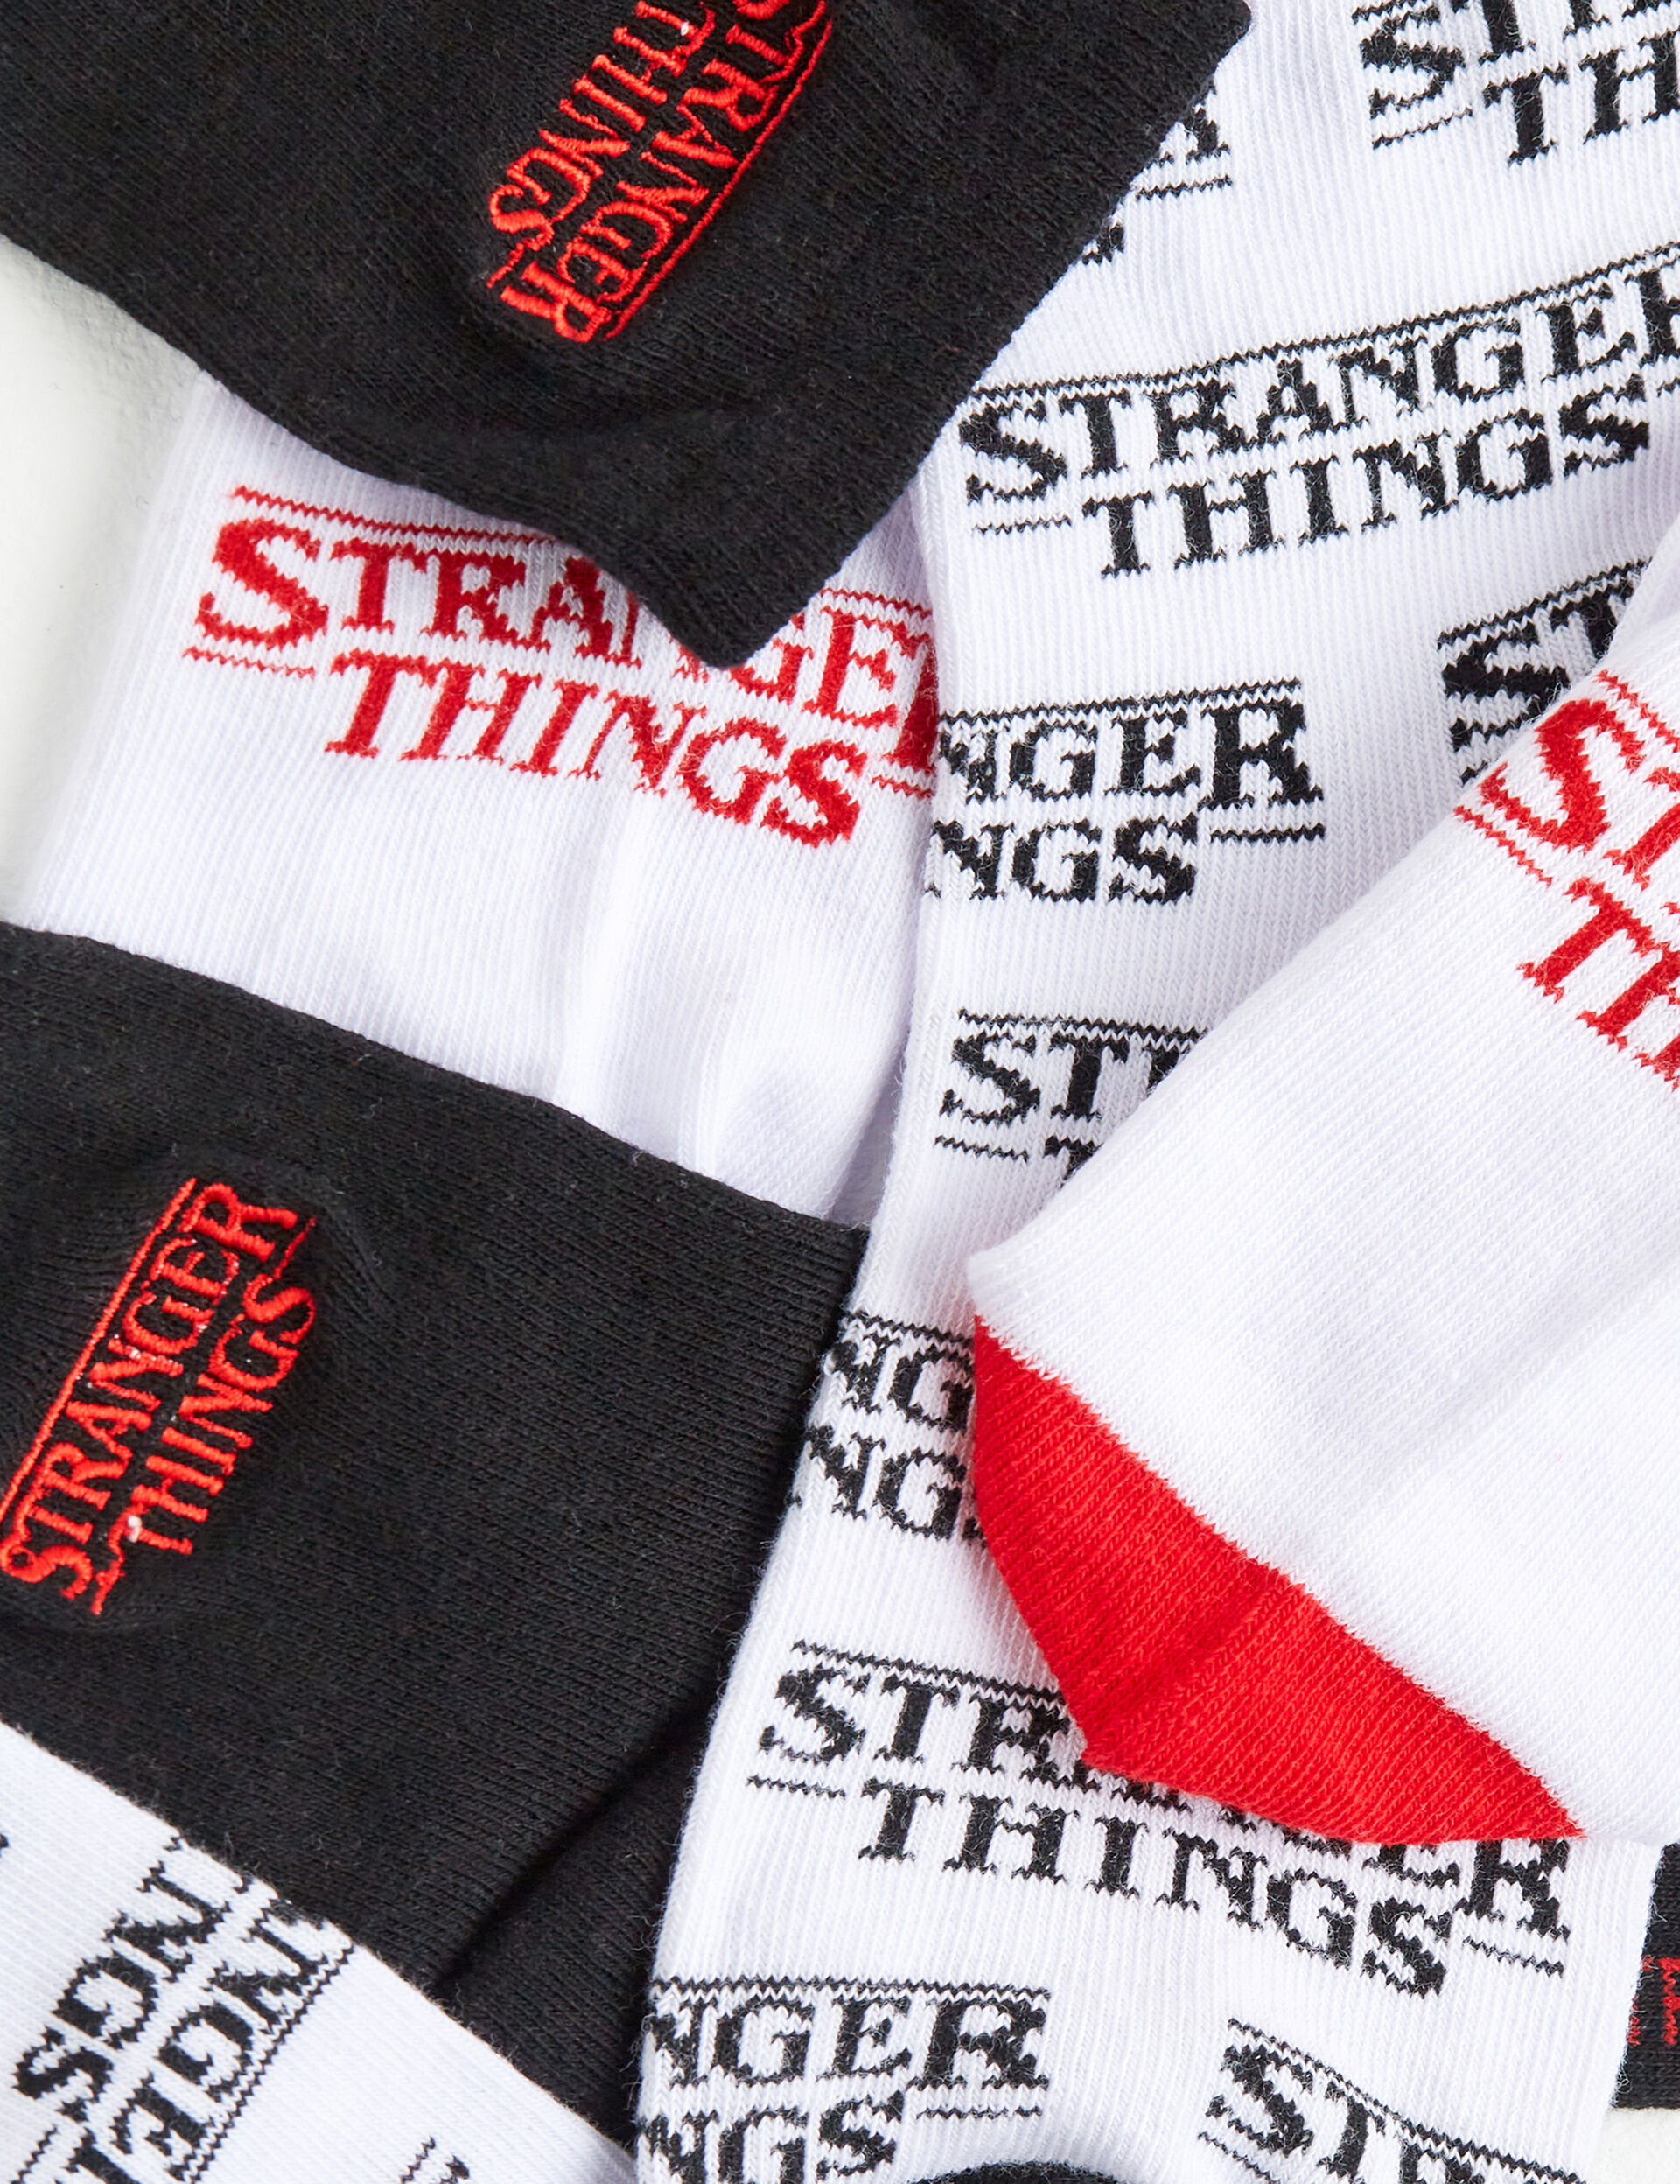 Stranger Things socks